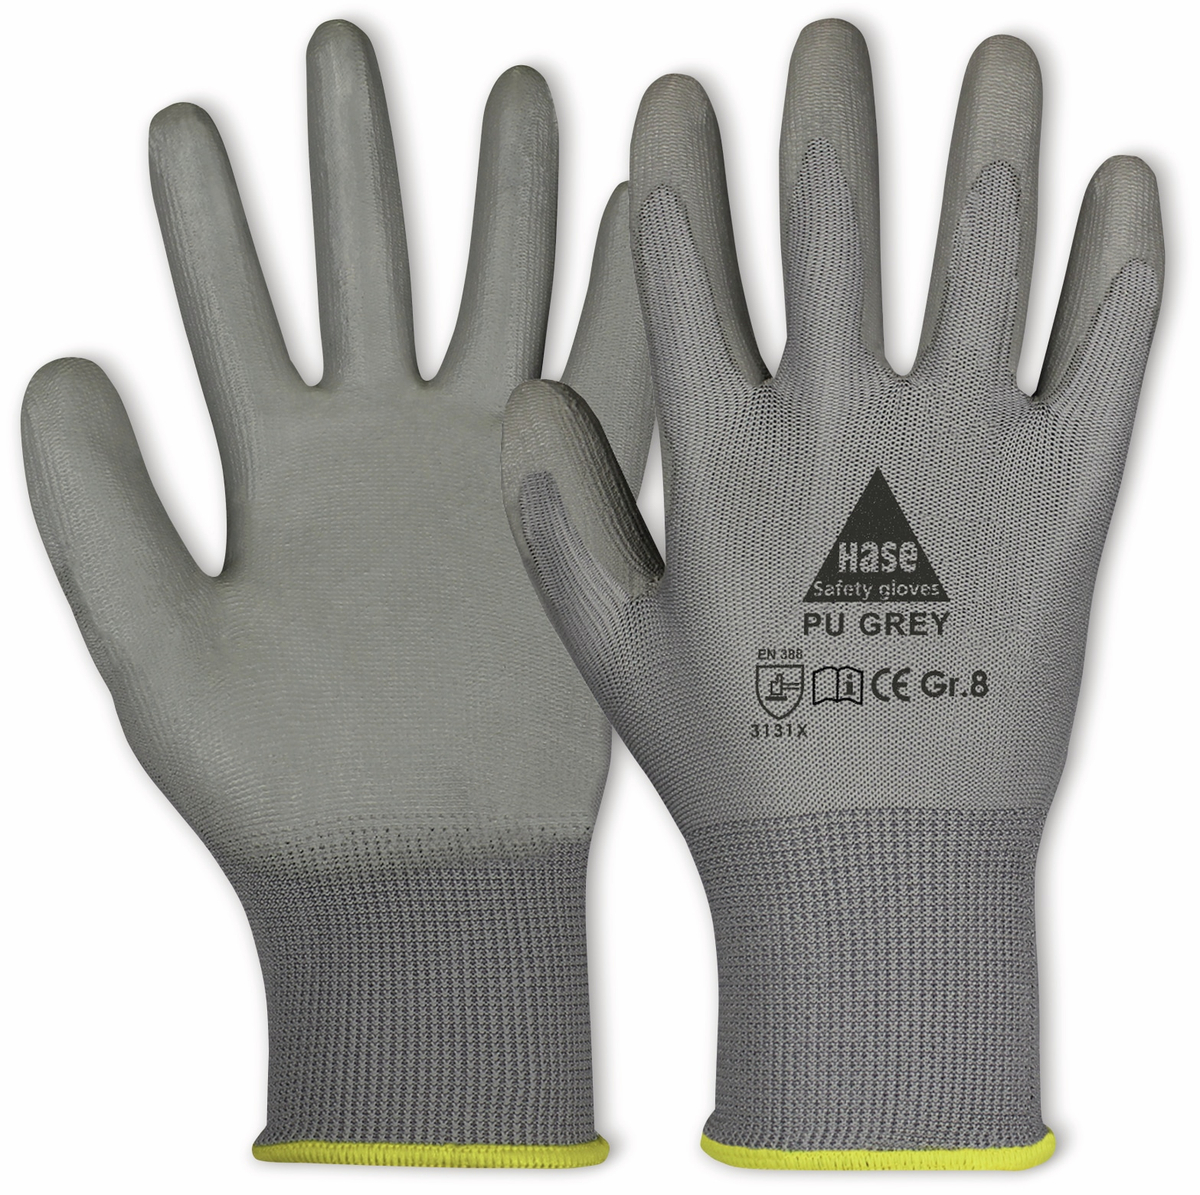 HASE SAFETY GLOVES Arbeitshandschuhe PU, PU grey, EN 388, EN 420, grau, Größe 6 von Hase Safety gloves